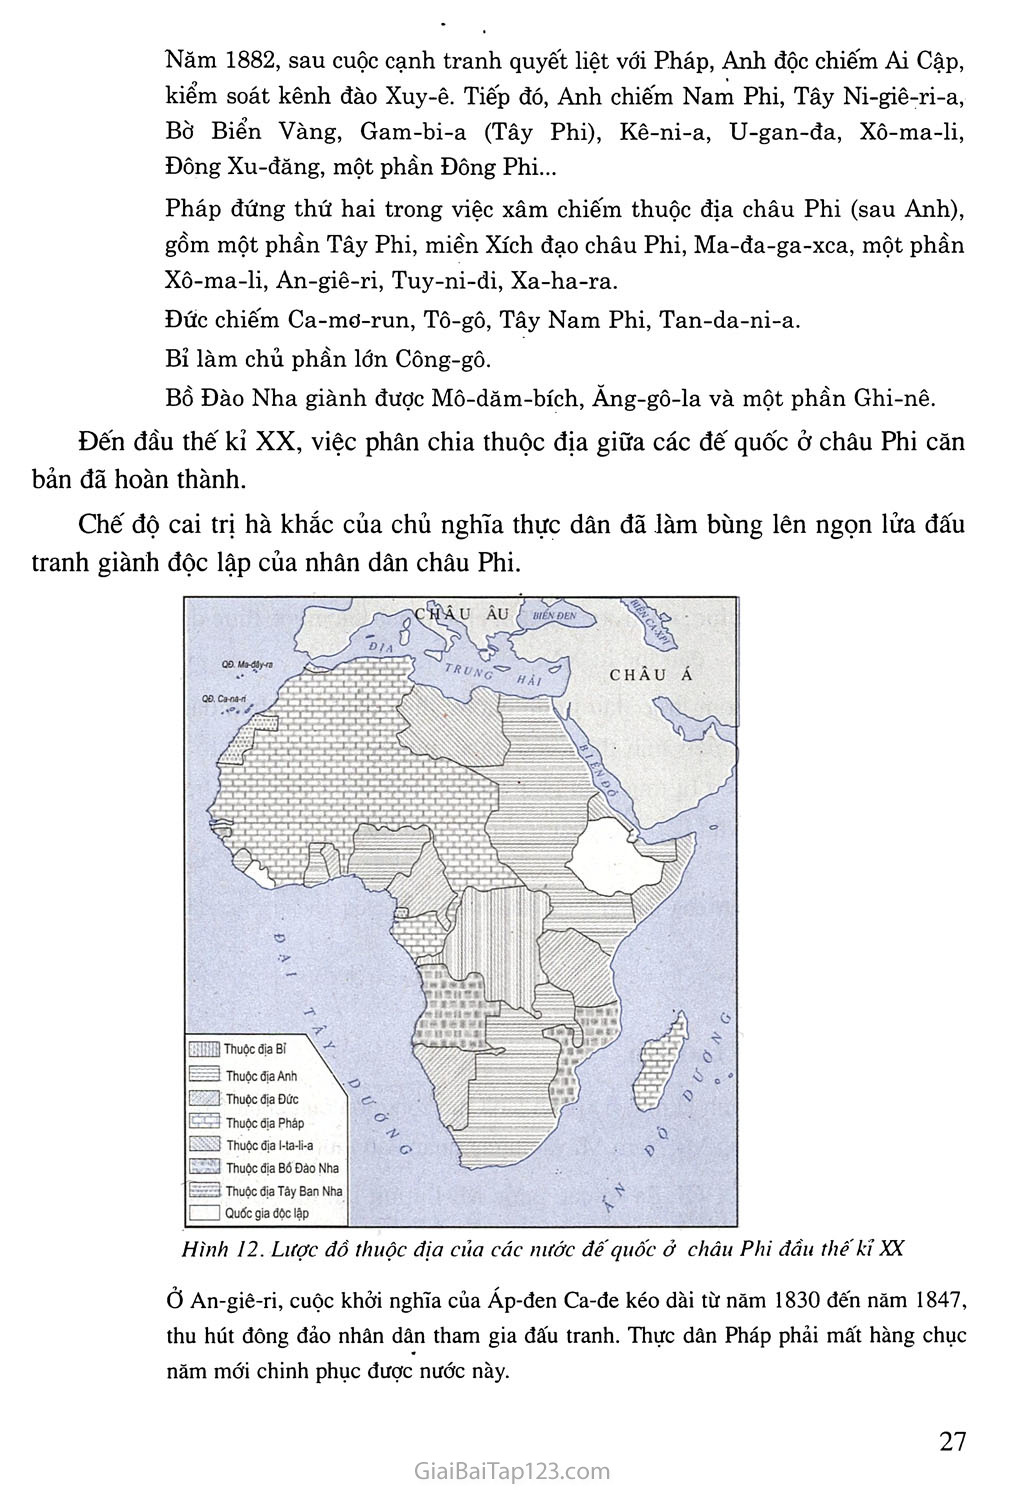 Bài 5. Châu Phi và khu vưc Mĩ Latinh (Thế kỉ XIX - đầu thế kỉ XX) trang 2